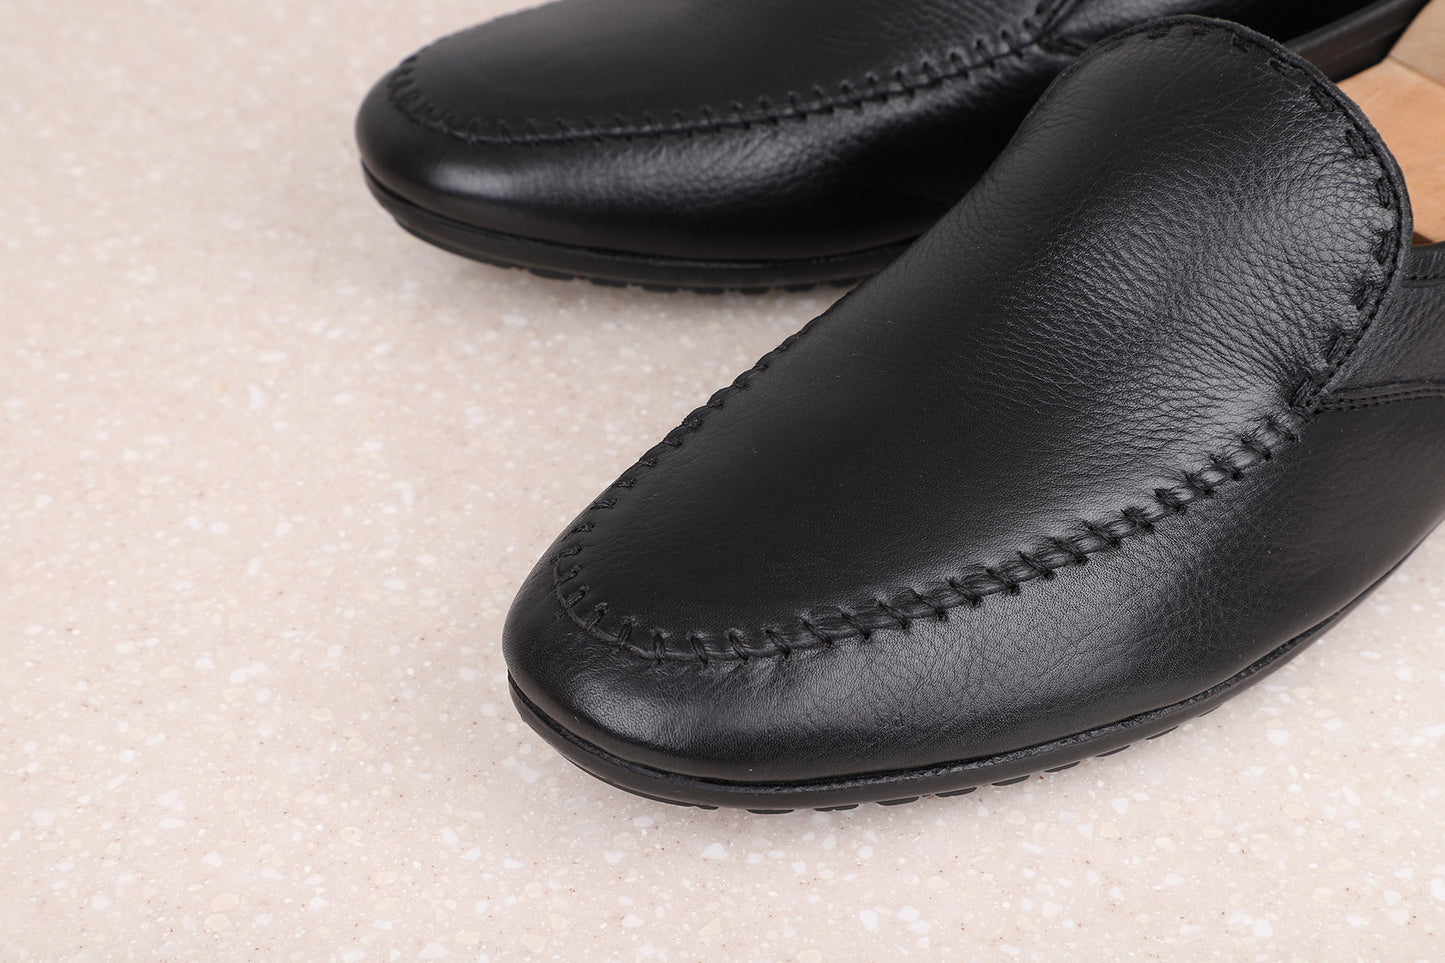 FORMAL SLIPPONS-BLACK-Men's Formal Shoe-Inc5 Shoes